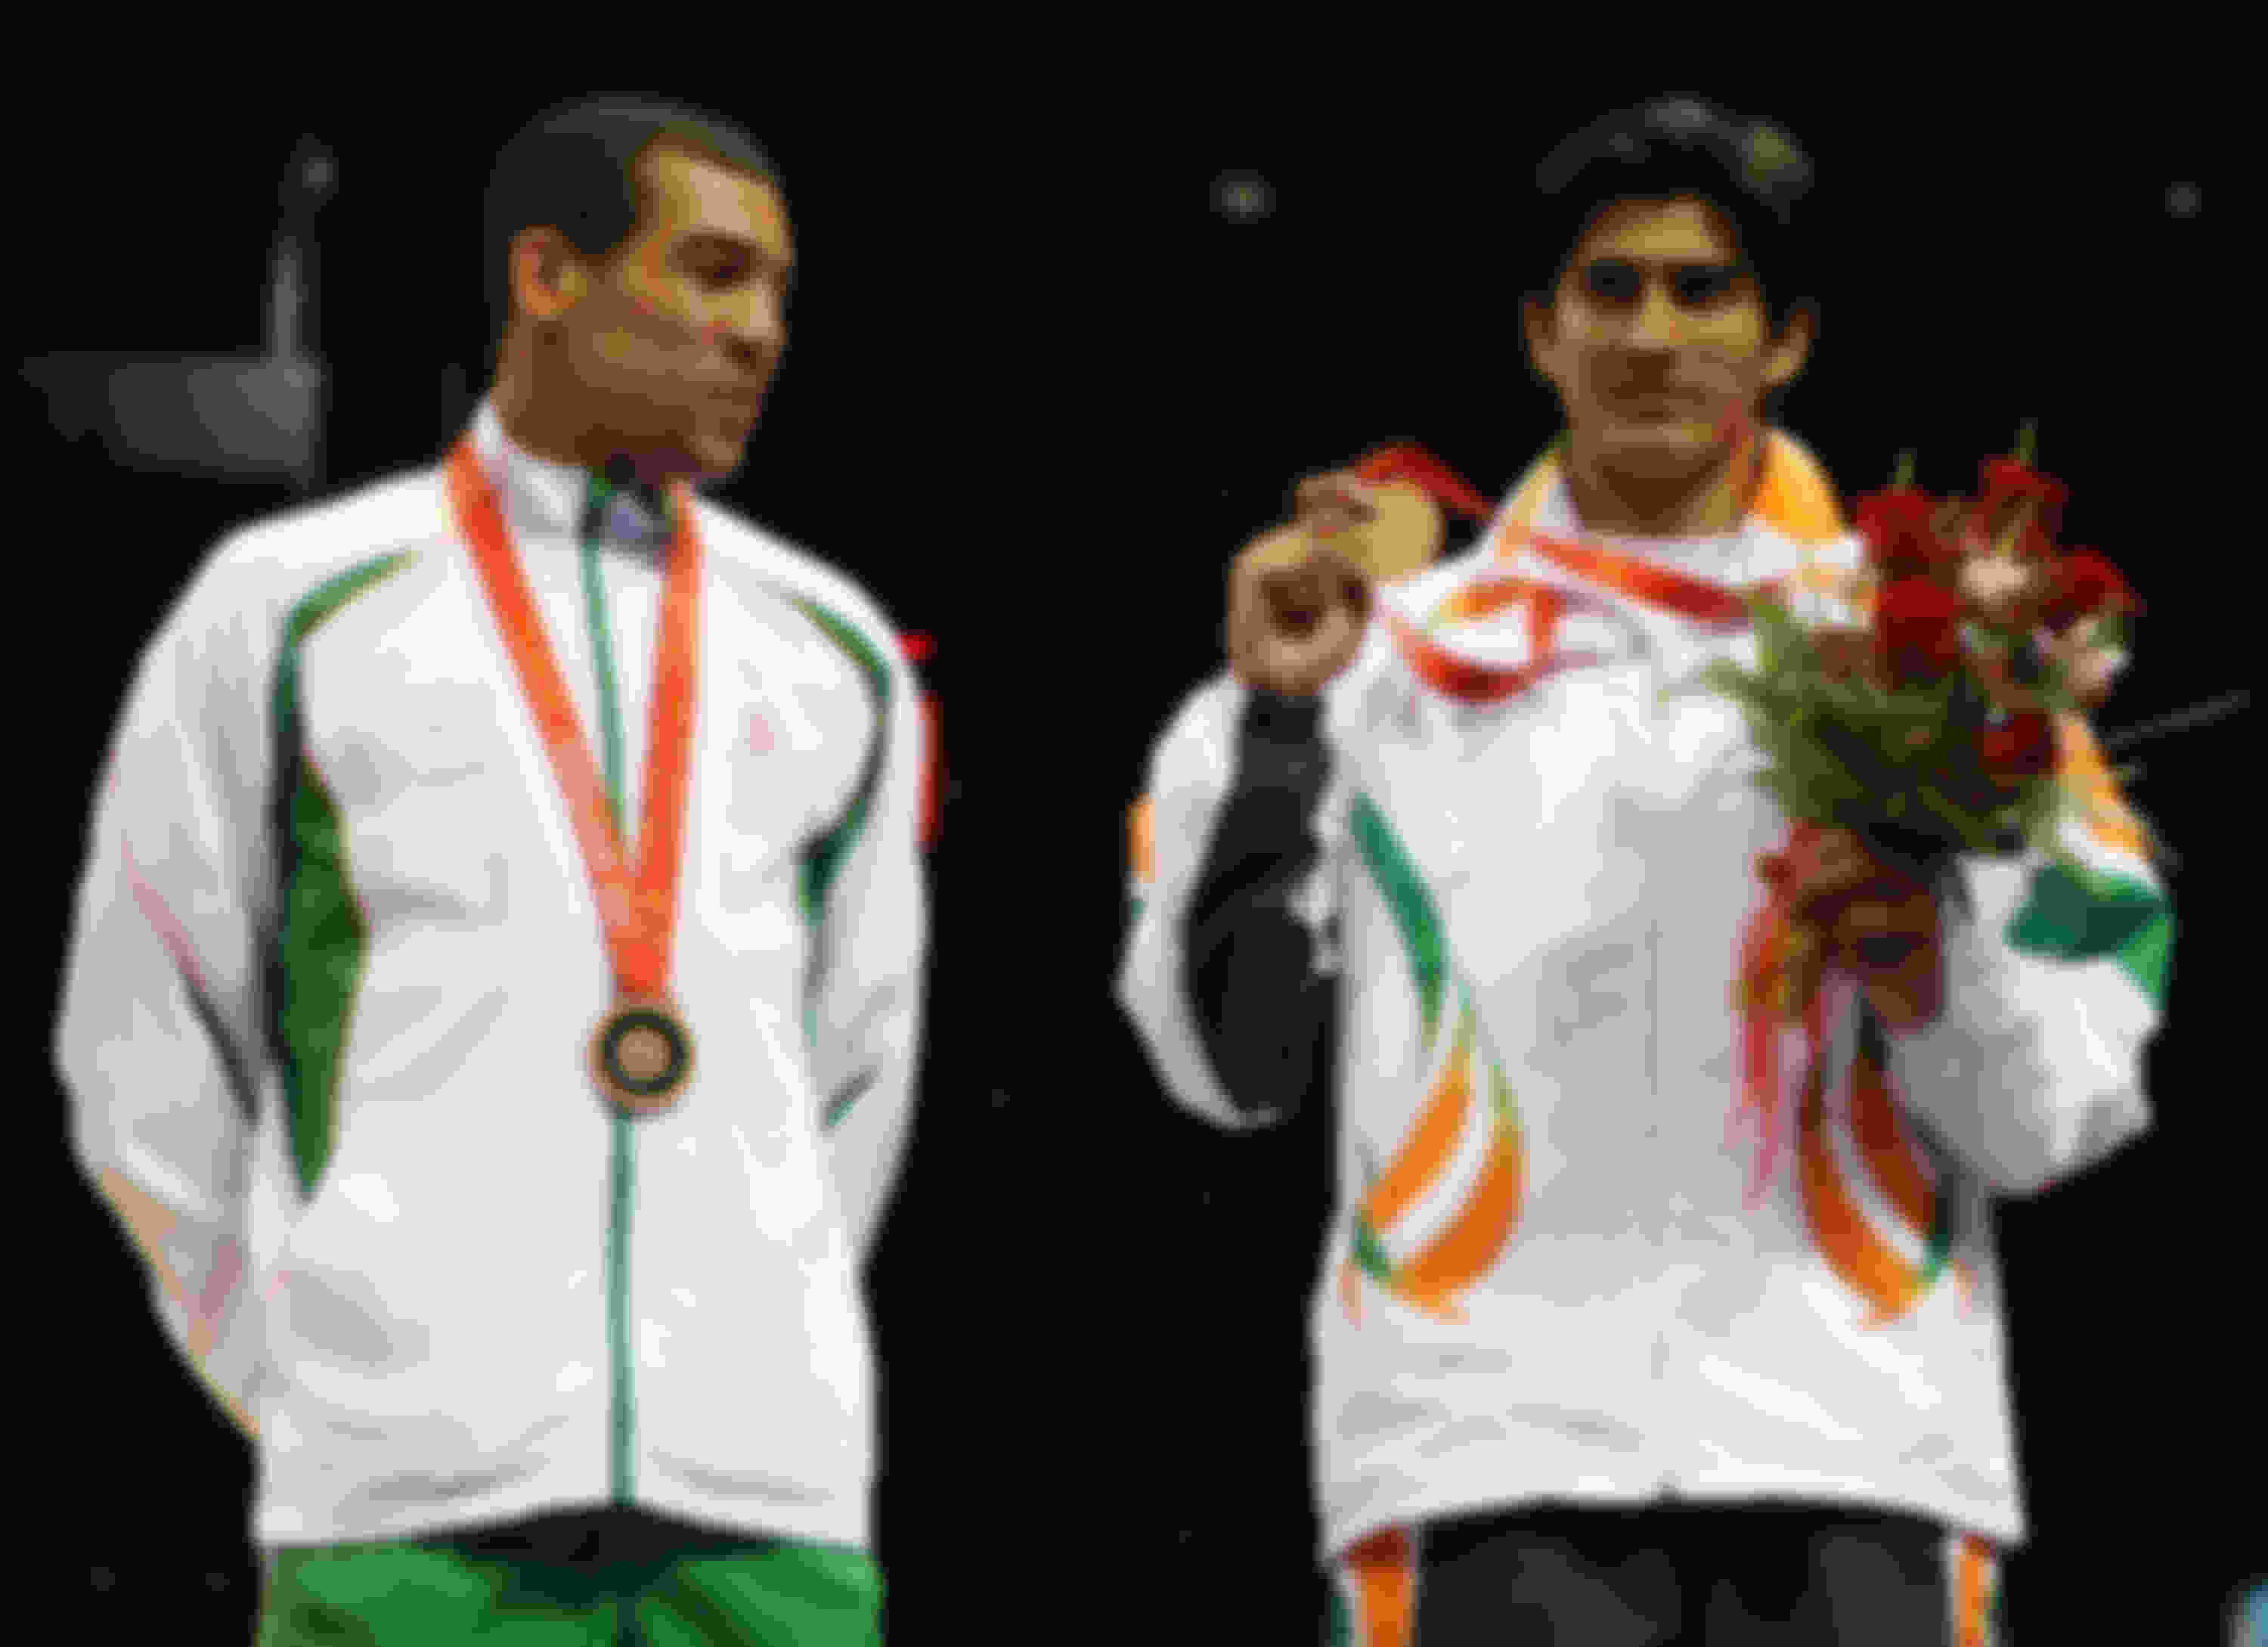 विजेंदर सिंह ओलंपिक मेडल जीतने वाले पहले भारतीय बॉक्सर बनें 